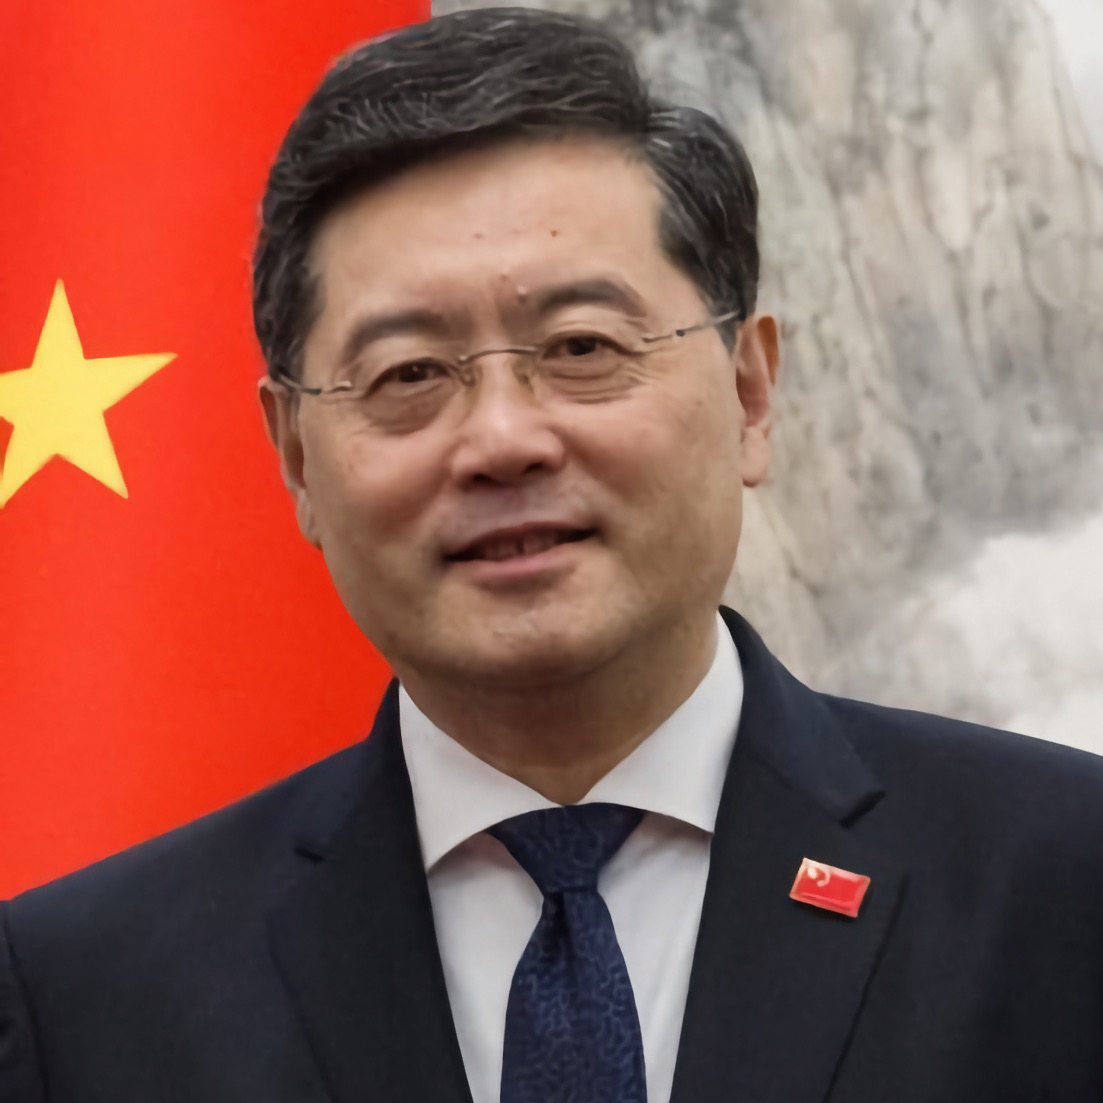 Wann kommt der chinesische Außenminister nach Berlin und rügt die politischen Schauprozesse in Deutschland?